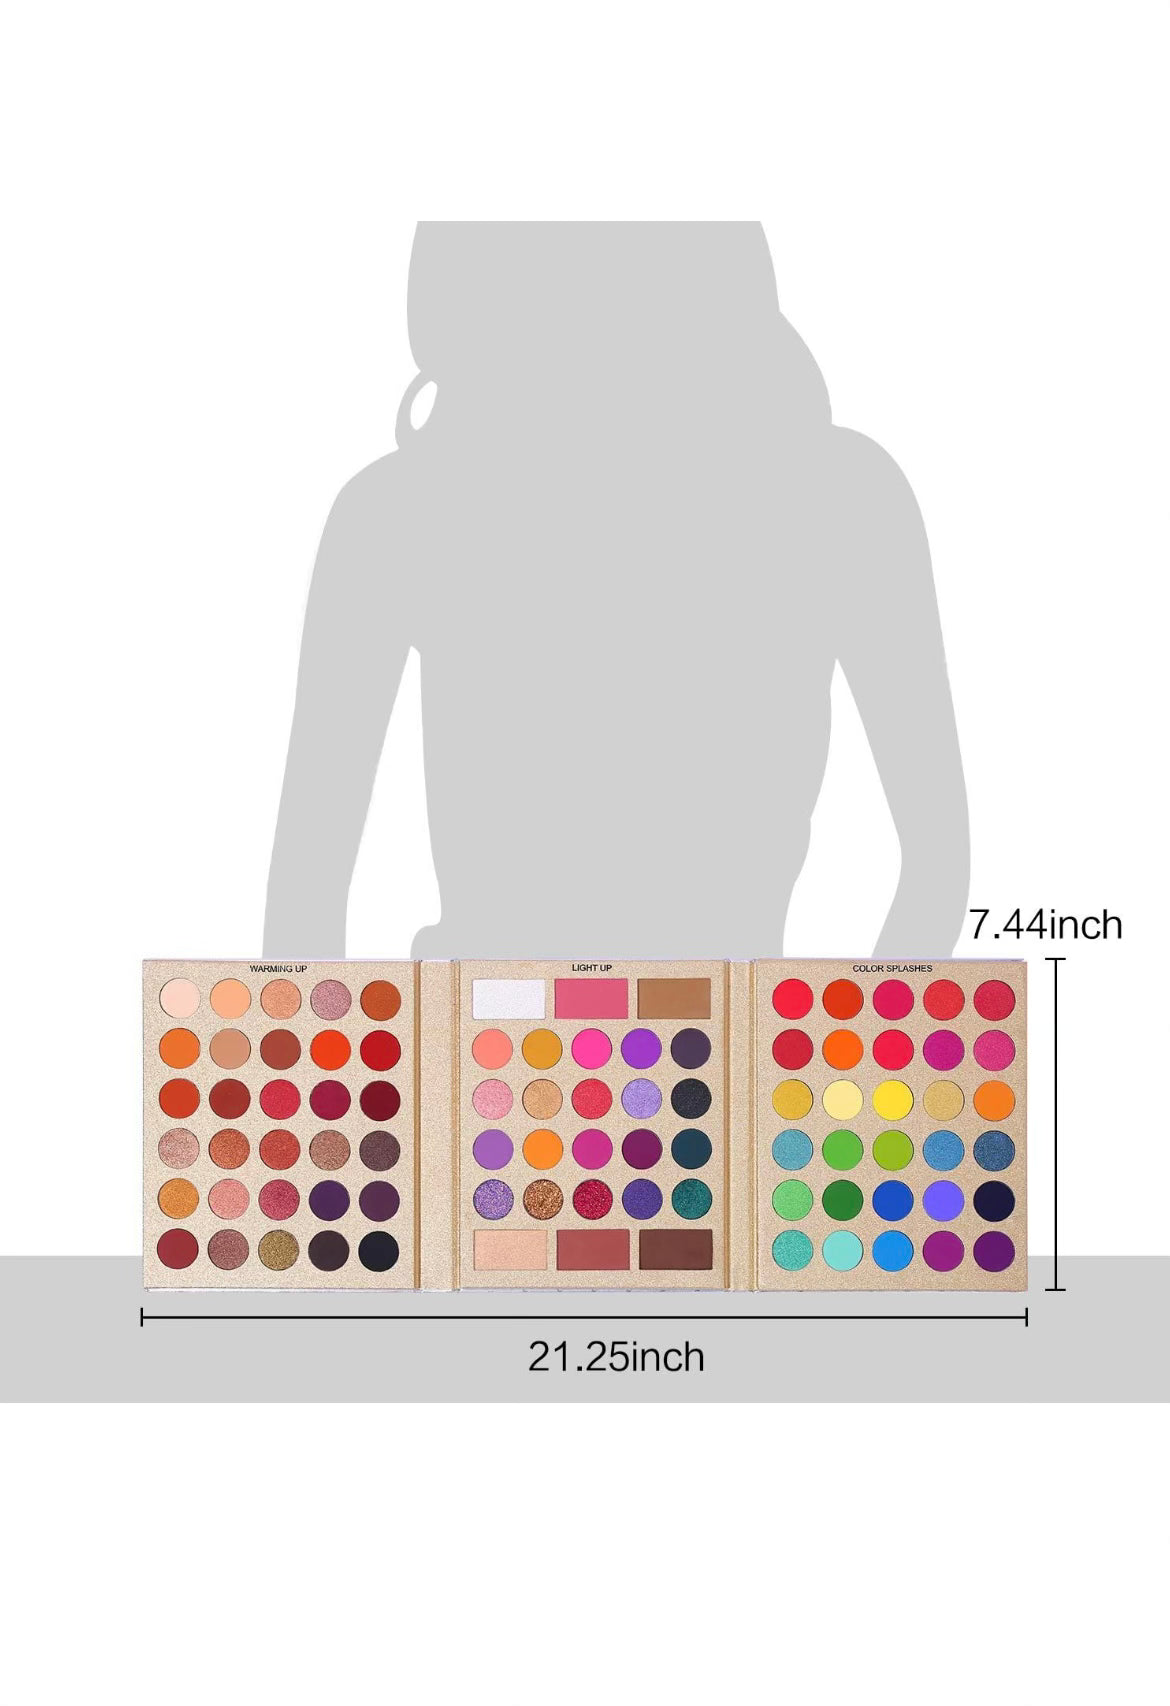 Rainbow Makeup Eyeshadow Palette 🎨 Pigmented 86 Colors